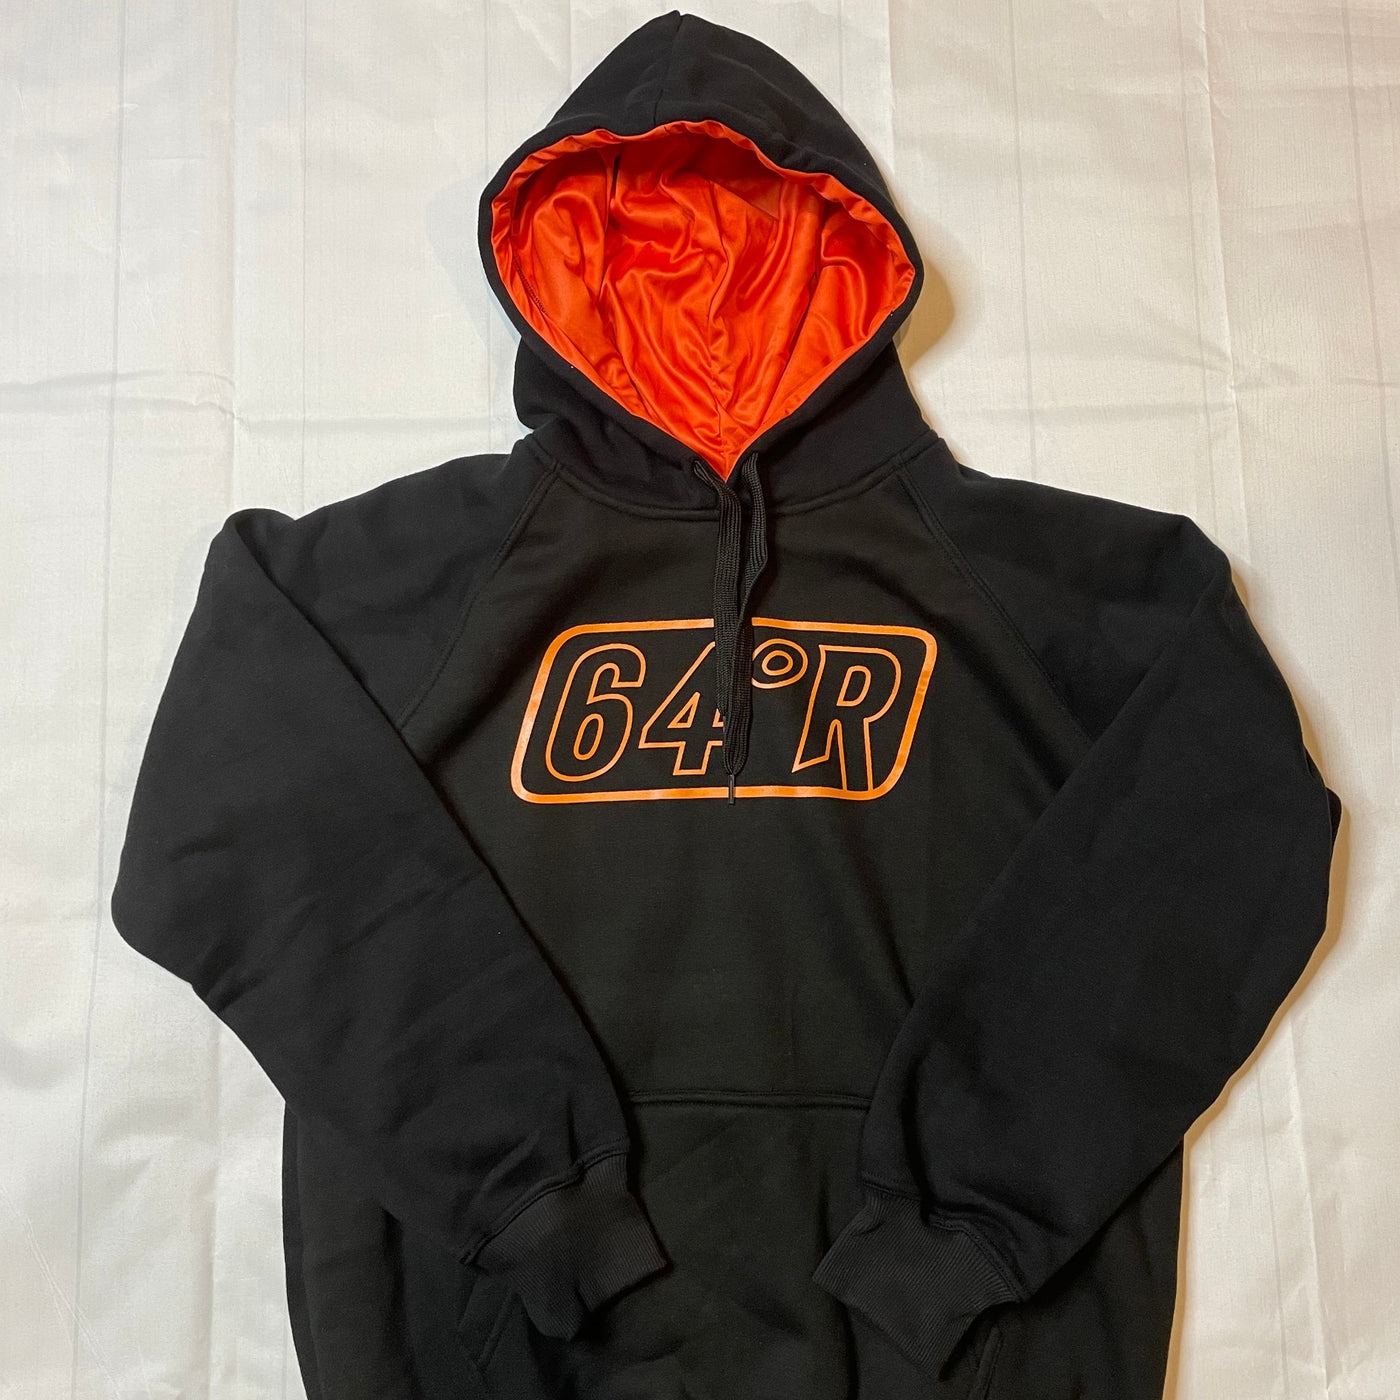 Black hoodie with orange logo